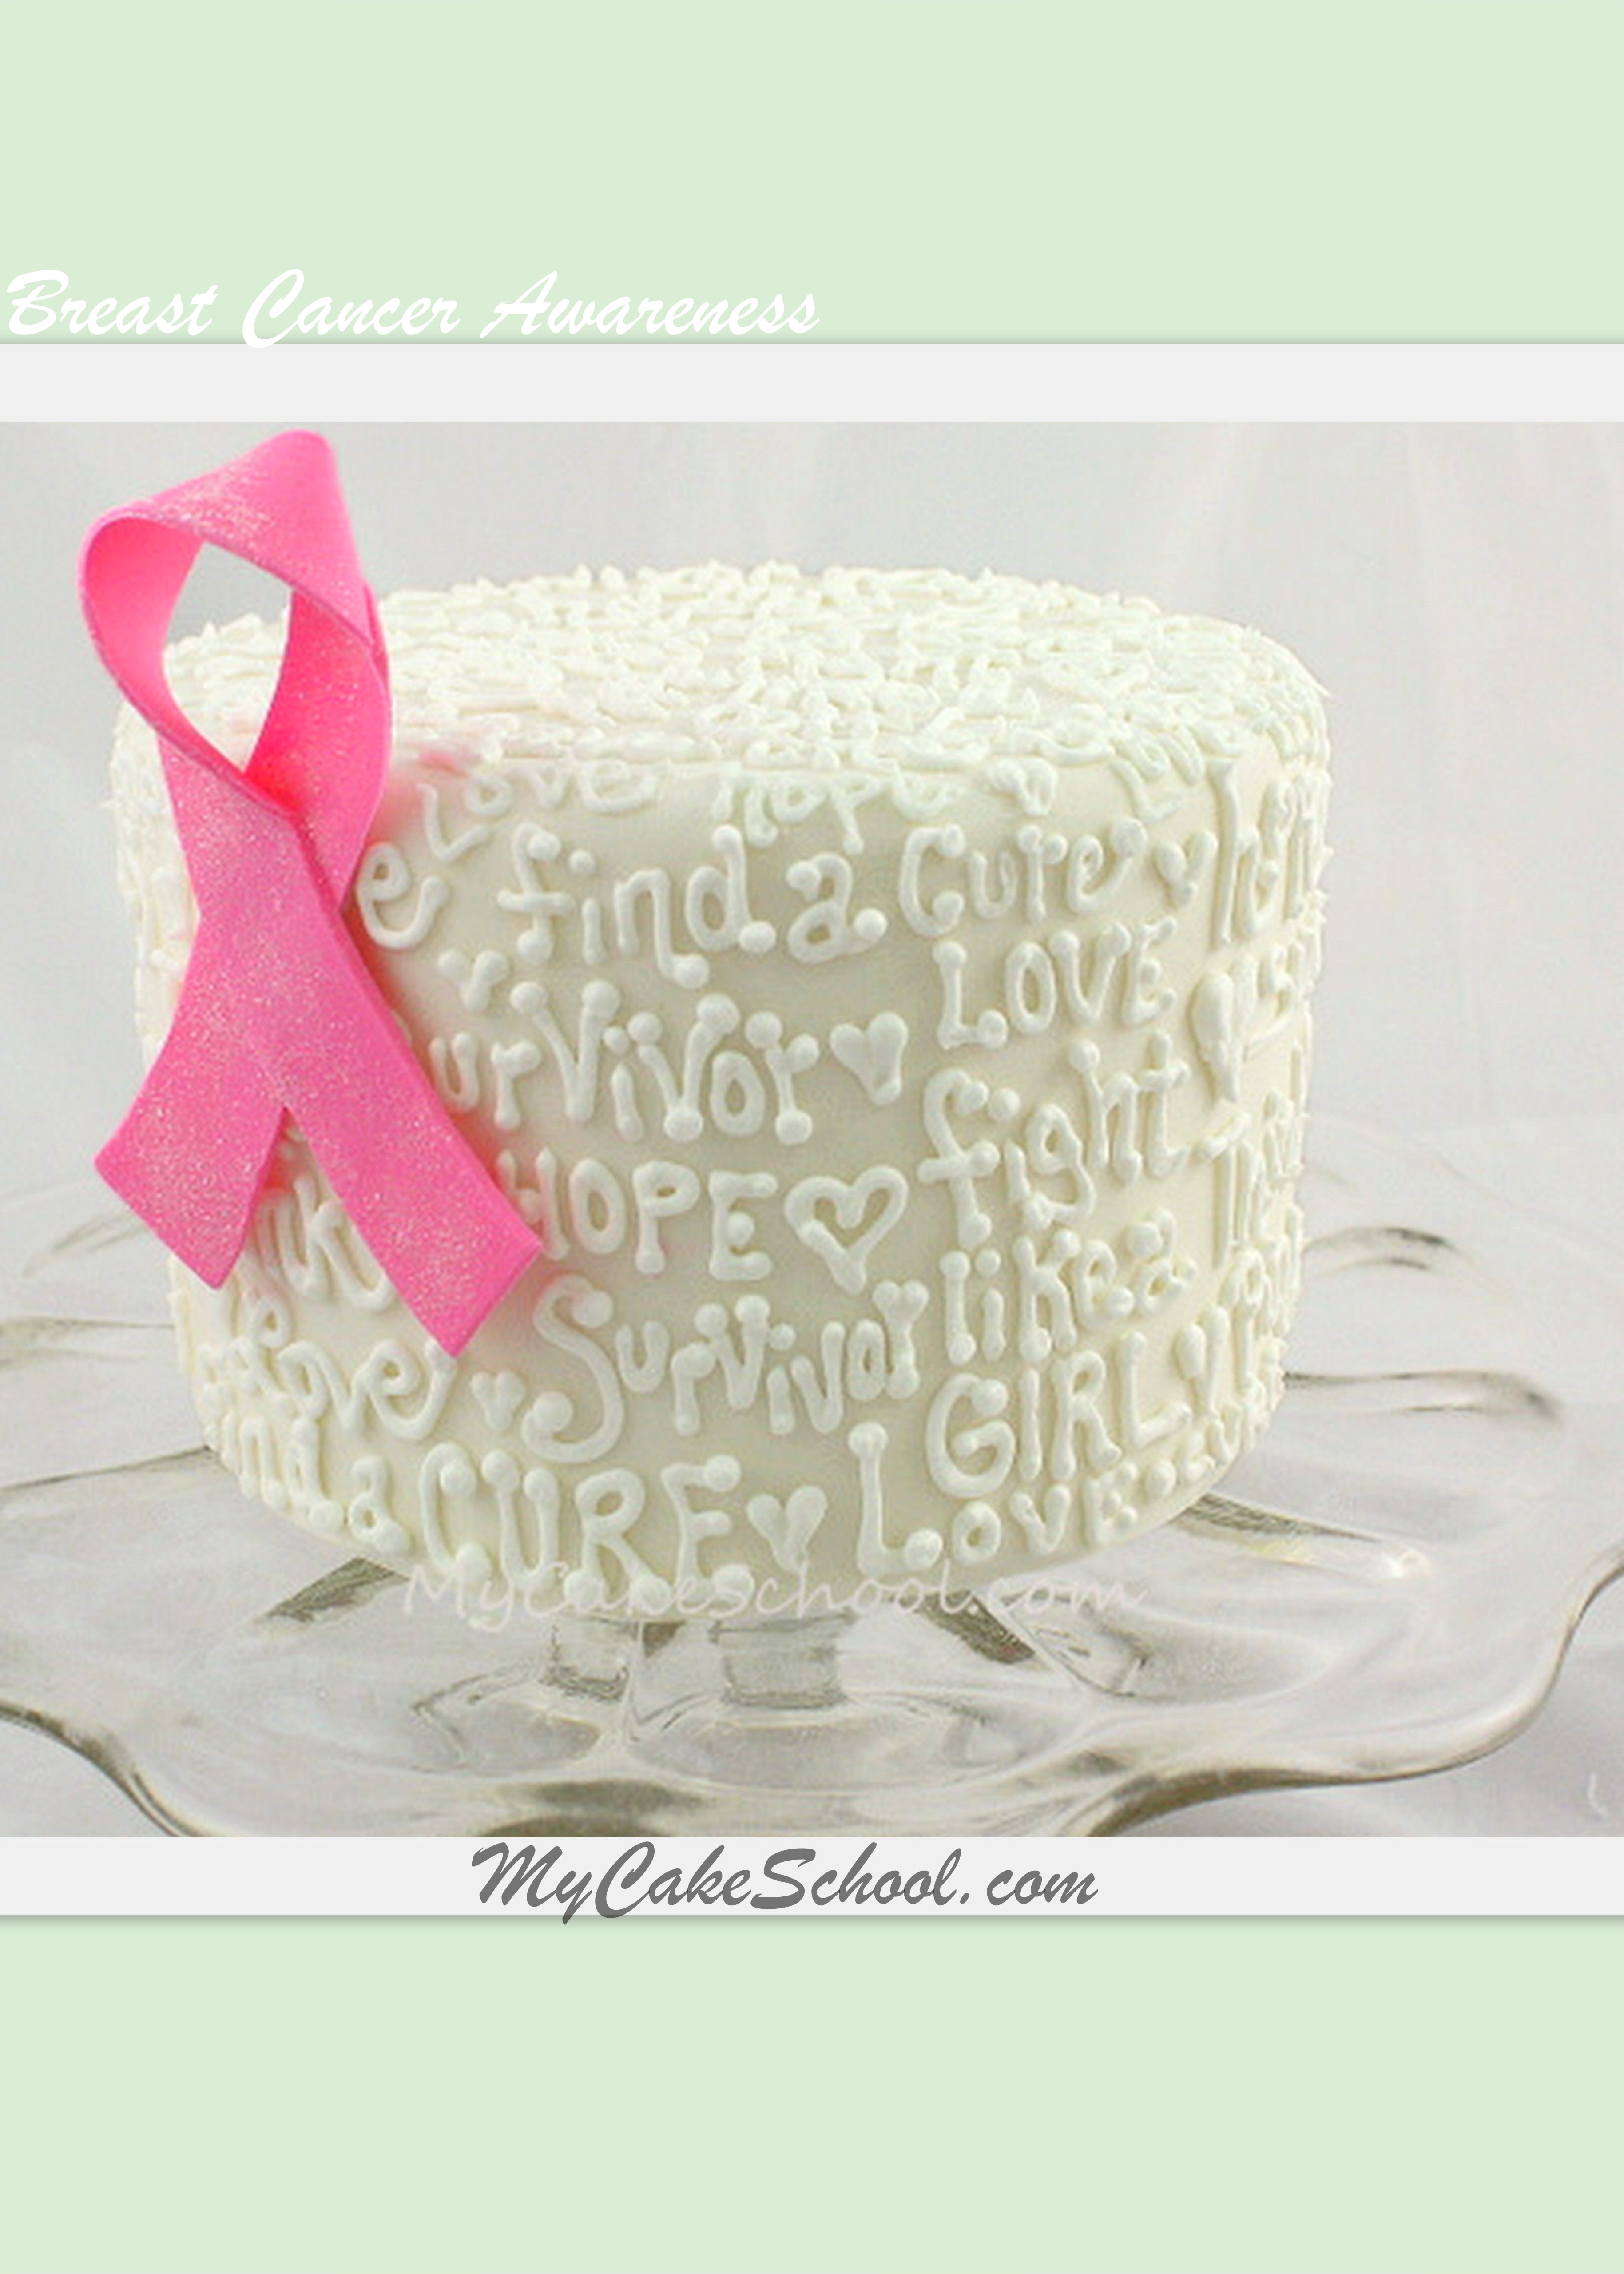 breast cancer awareness cake free blog tutorial by mycakeschool com